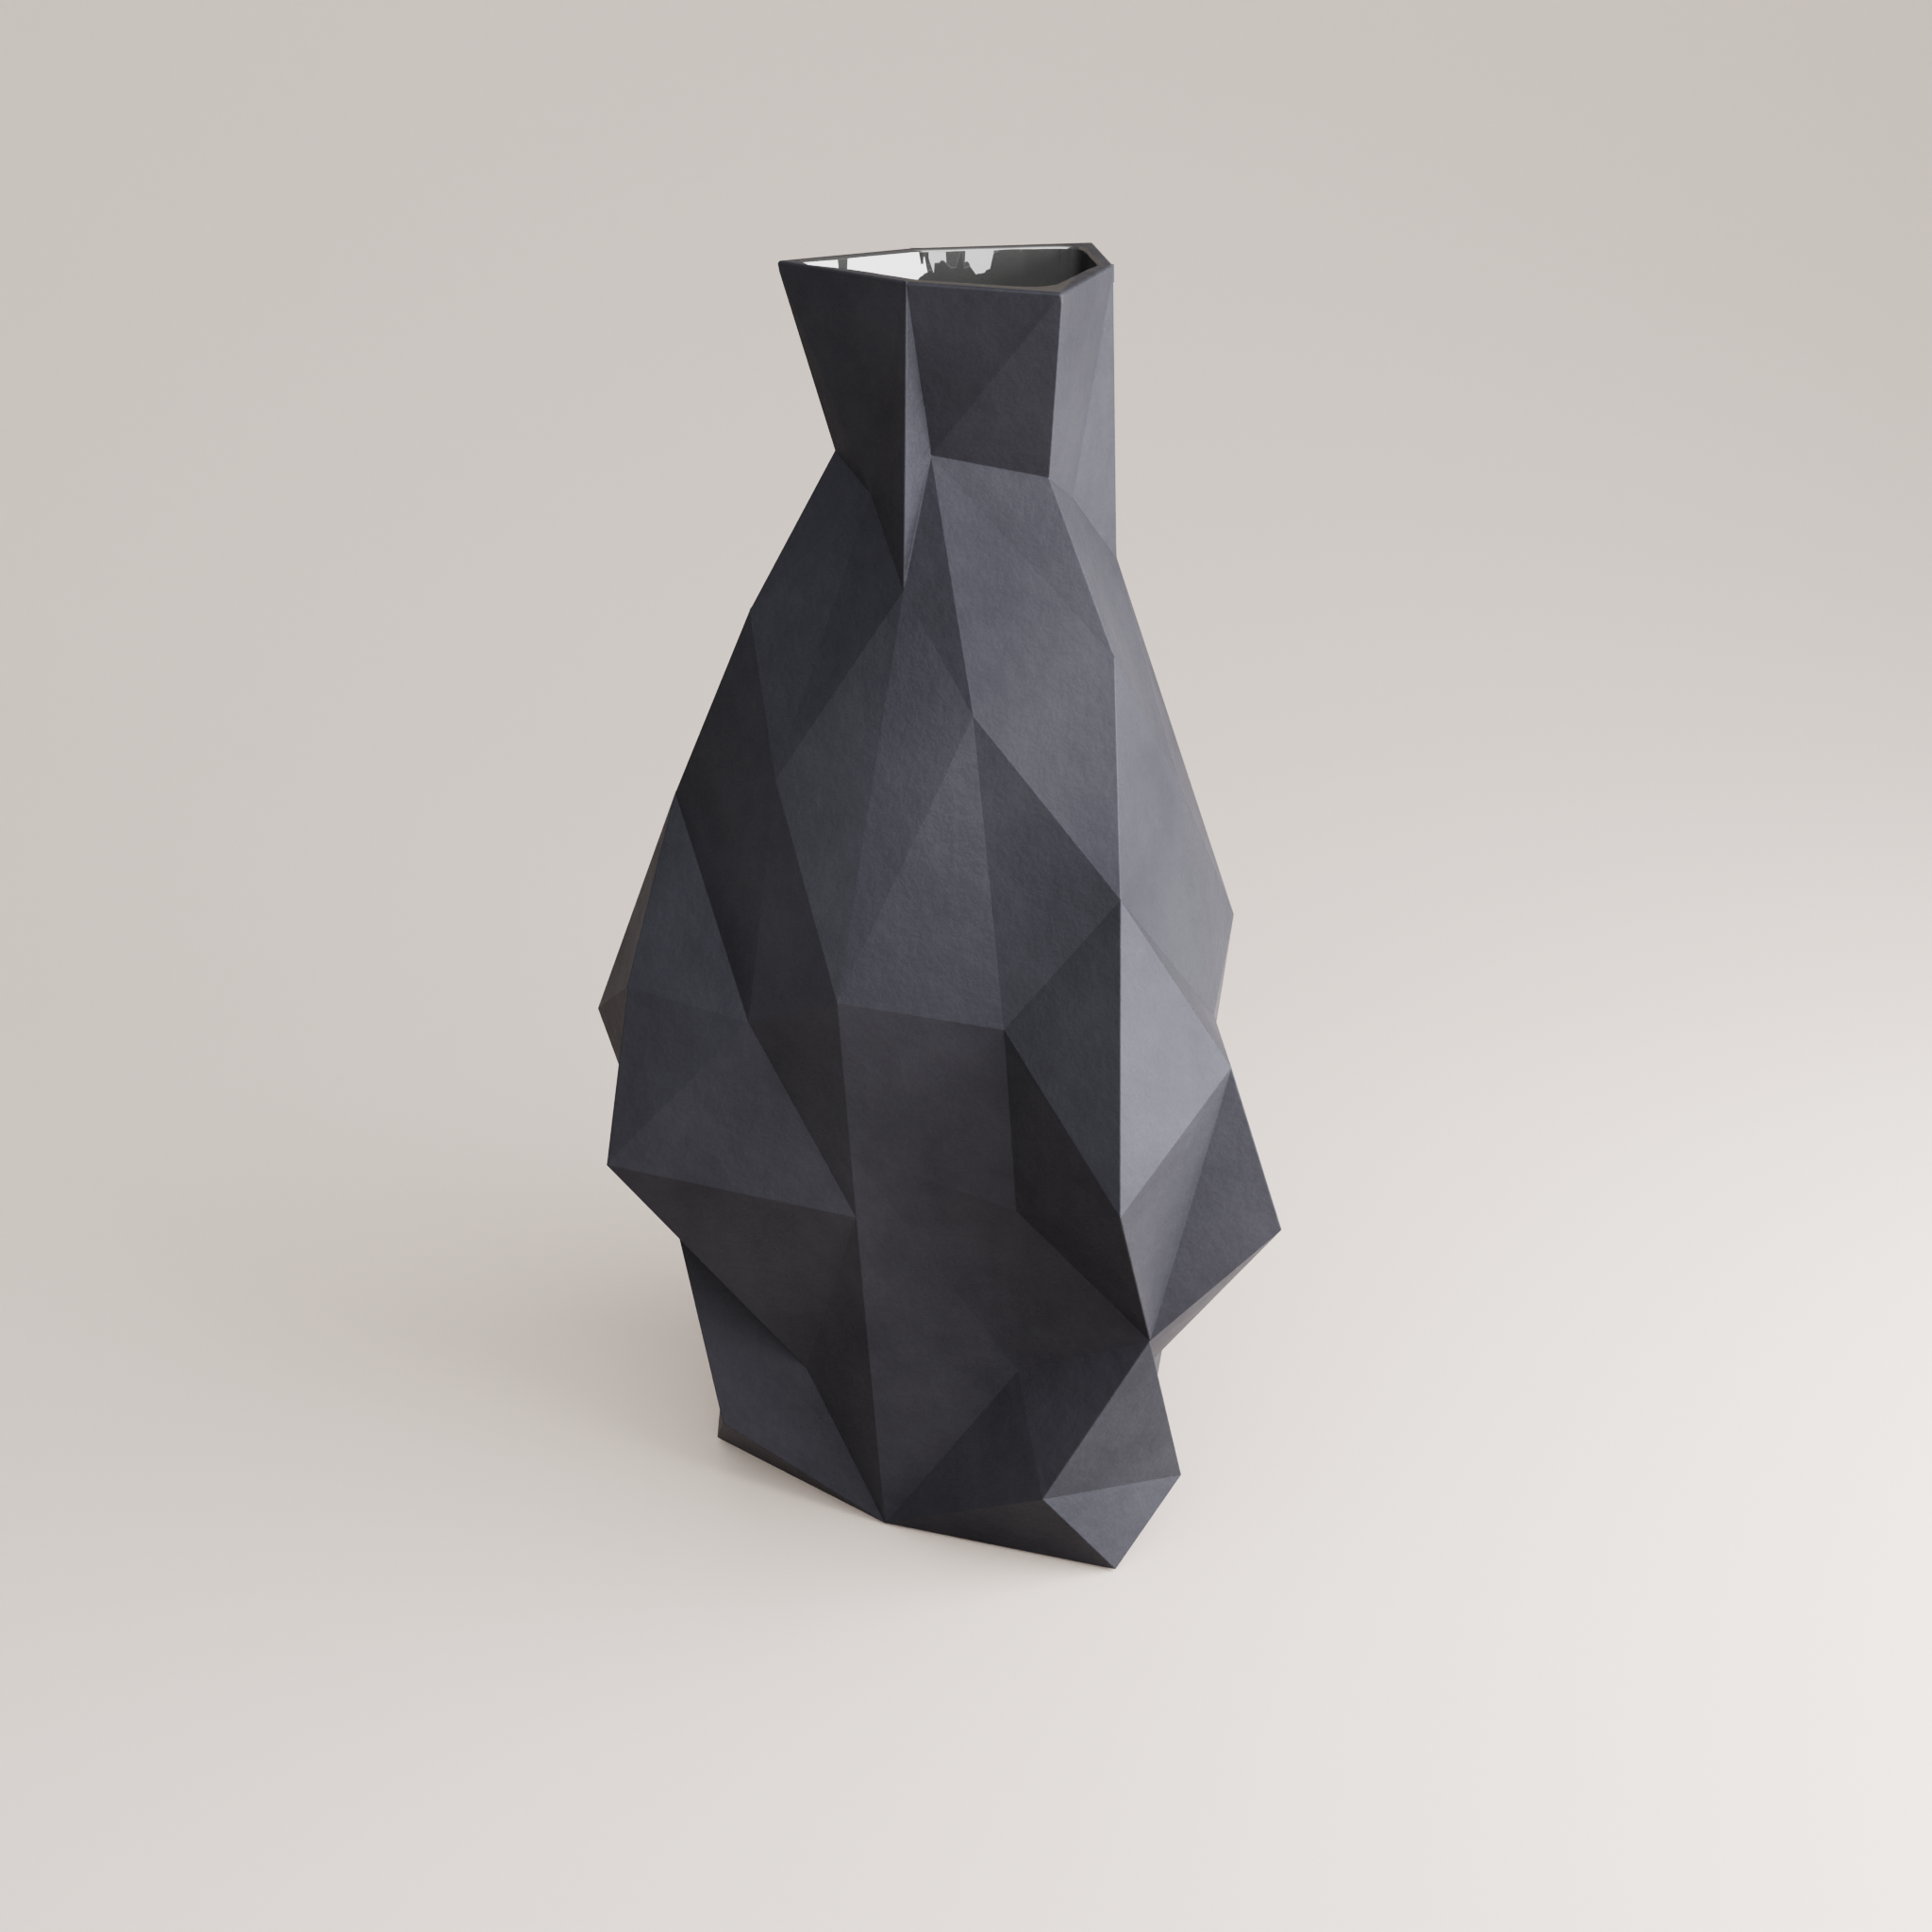 Simplexxa 1 Porcelain Vase (h37 cm) - Holaria